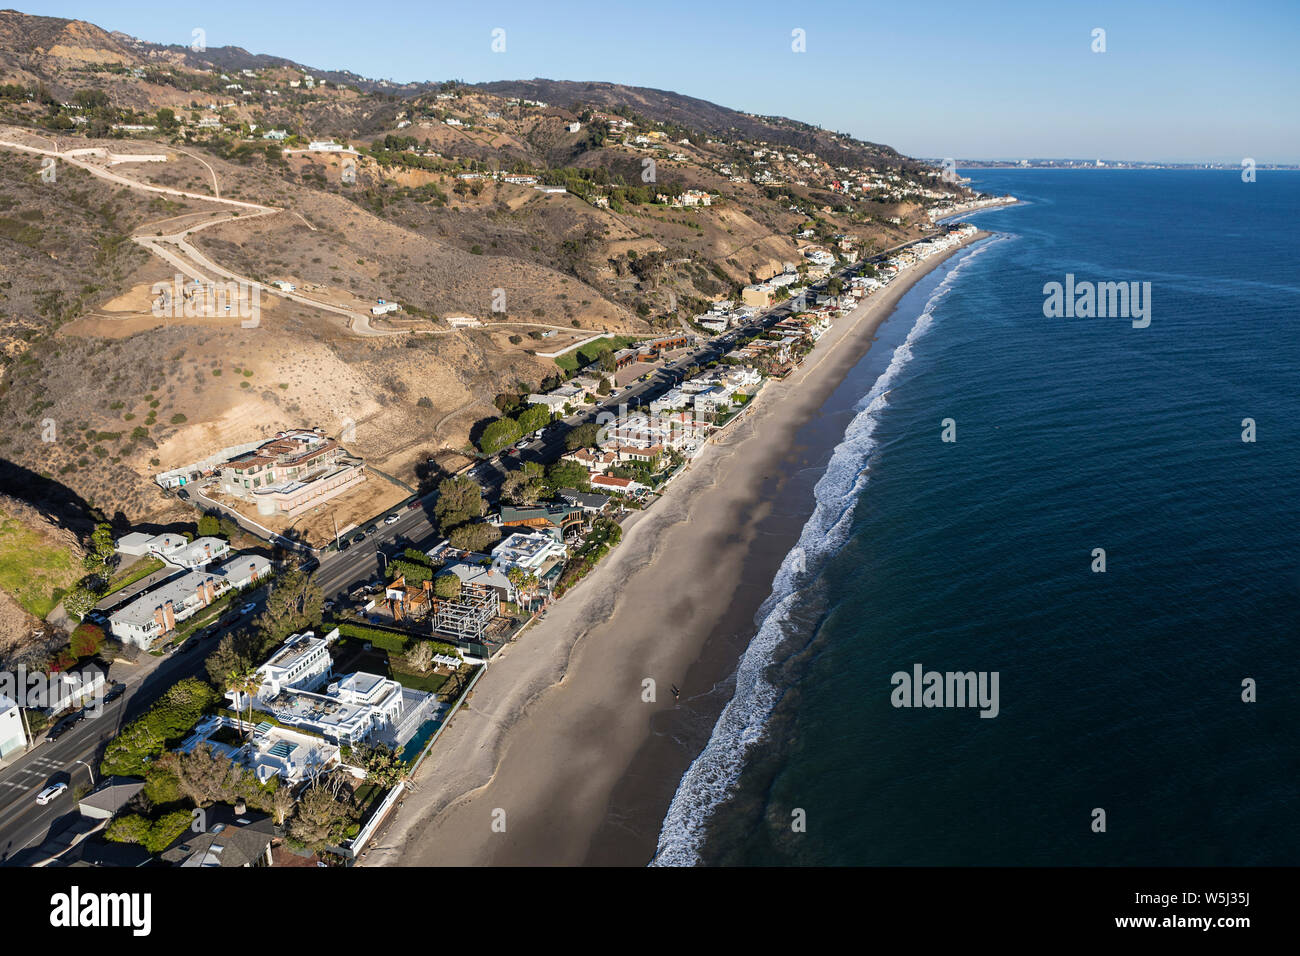 Vue aérienne de la maison et du bâtiment, près de la rive de Los Angeles et Santa Monica, sur la route 1 dans la région de Malibu, Californie. Banque D'Images